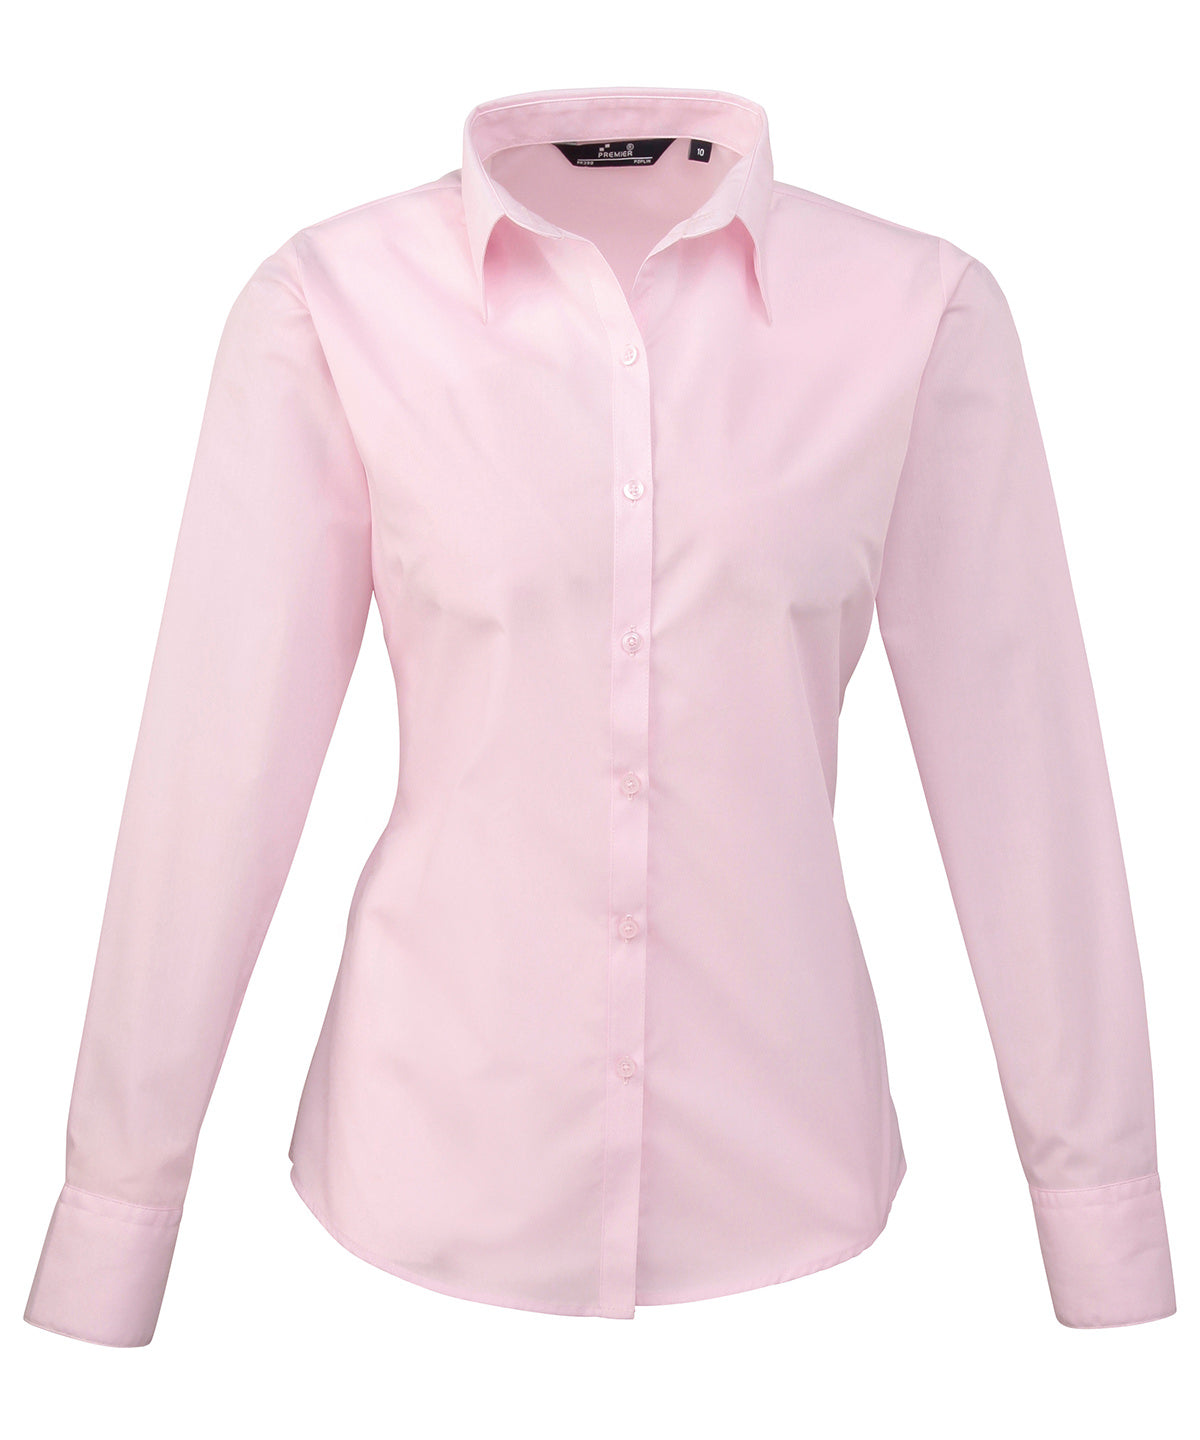 Premier Women's poplin long sleeve blouse Pink